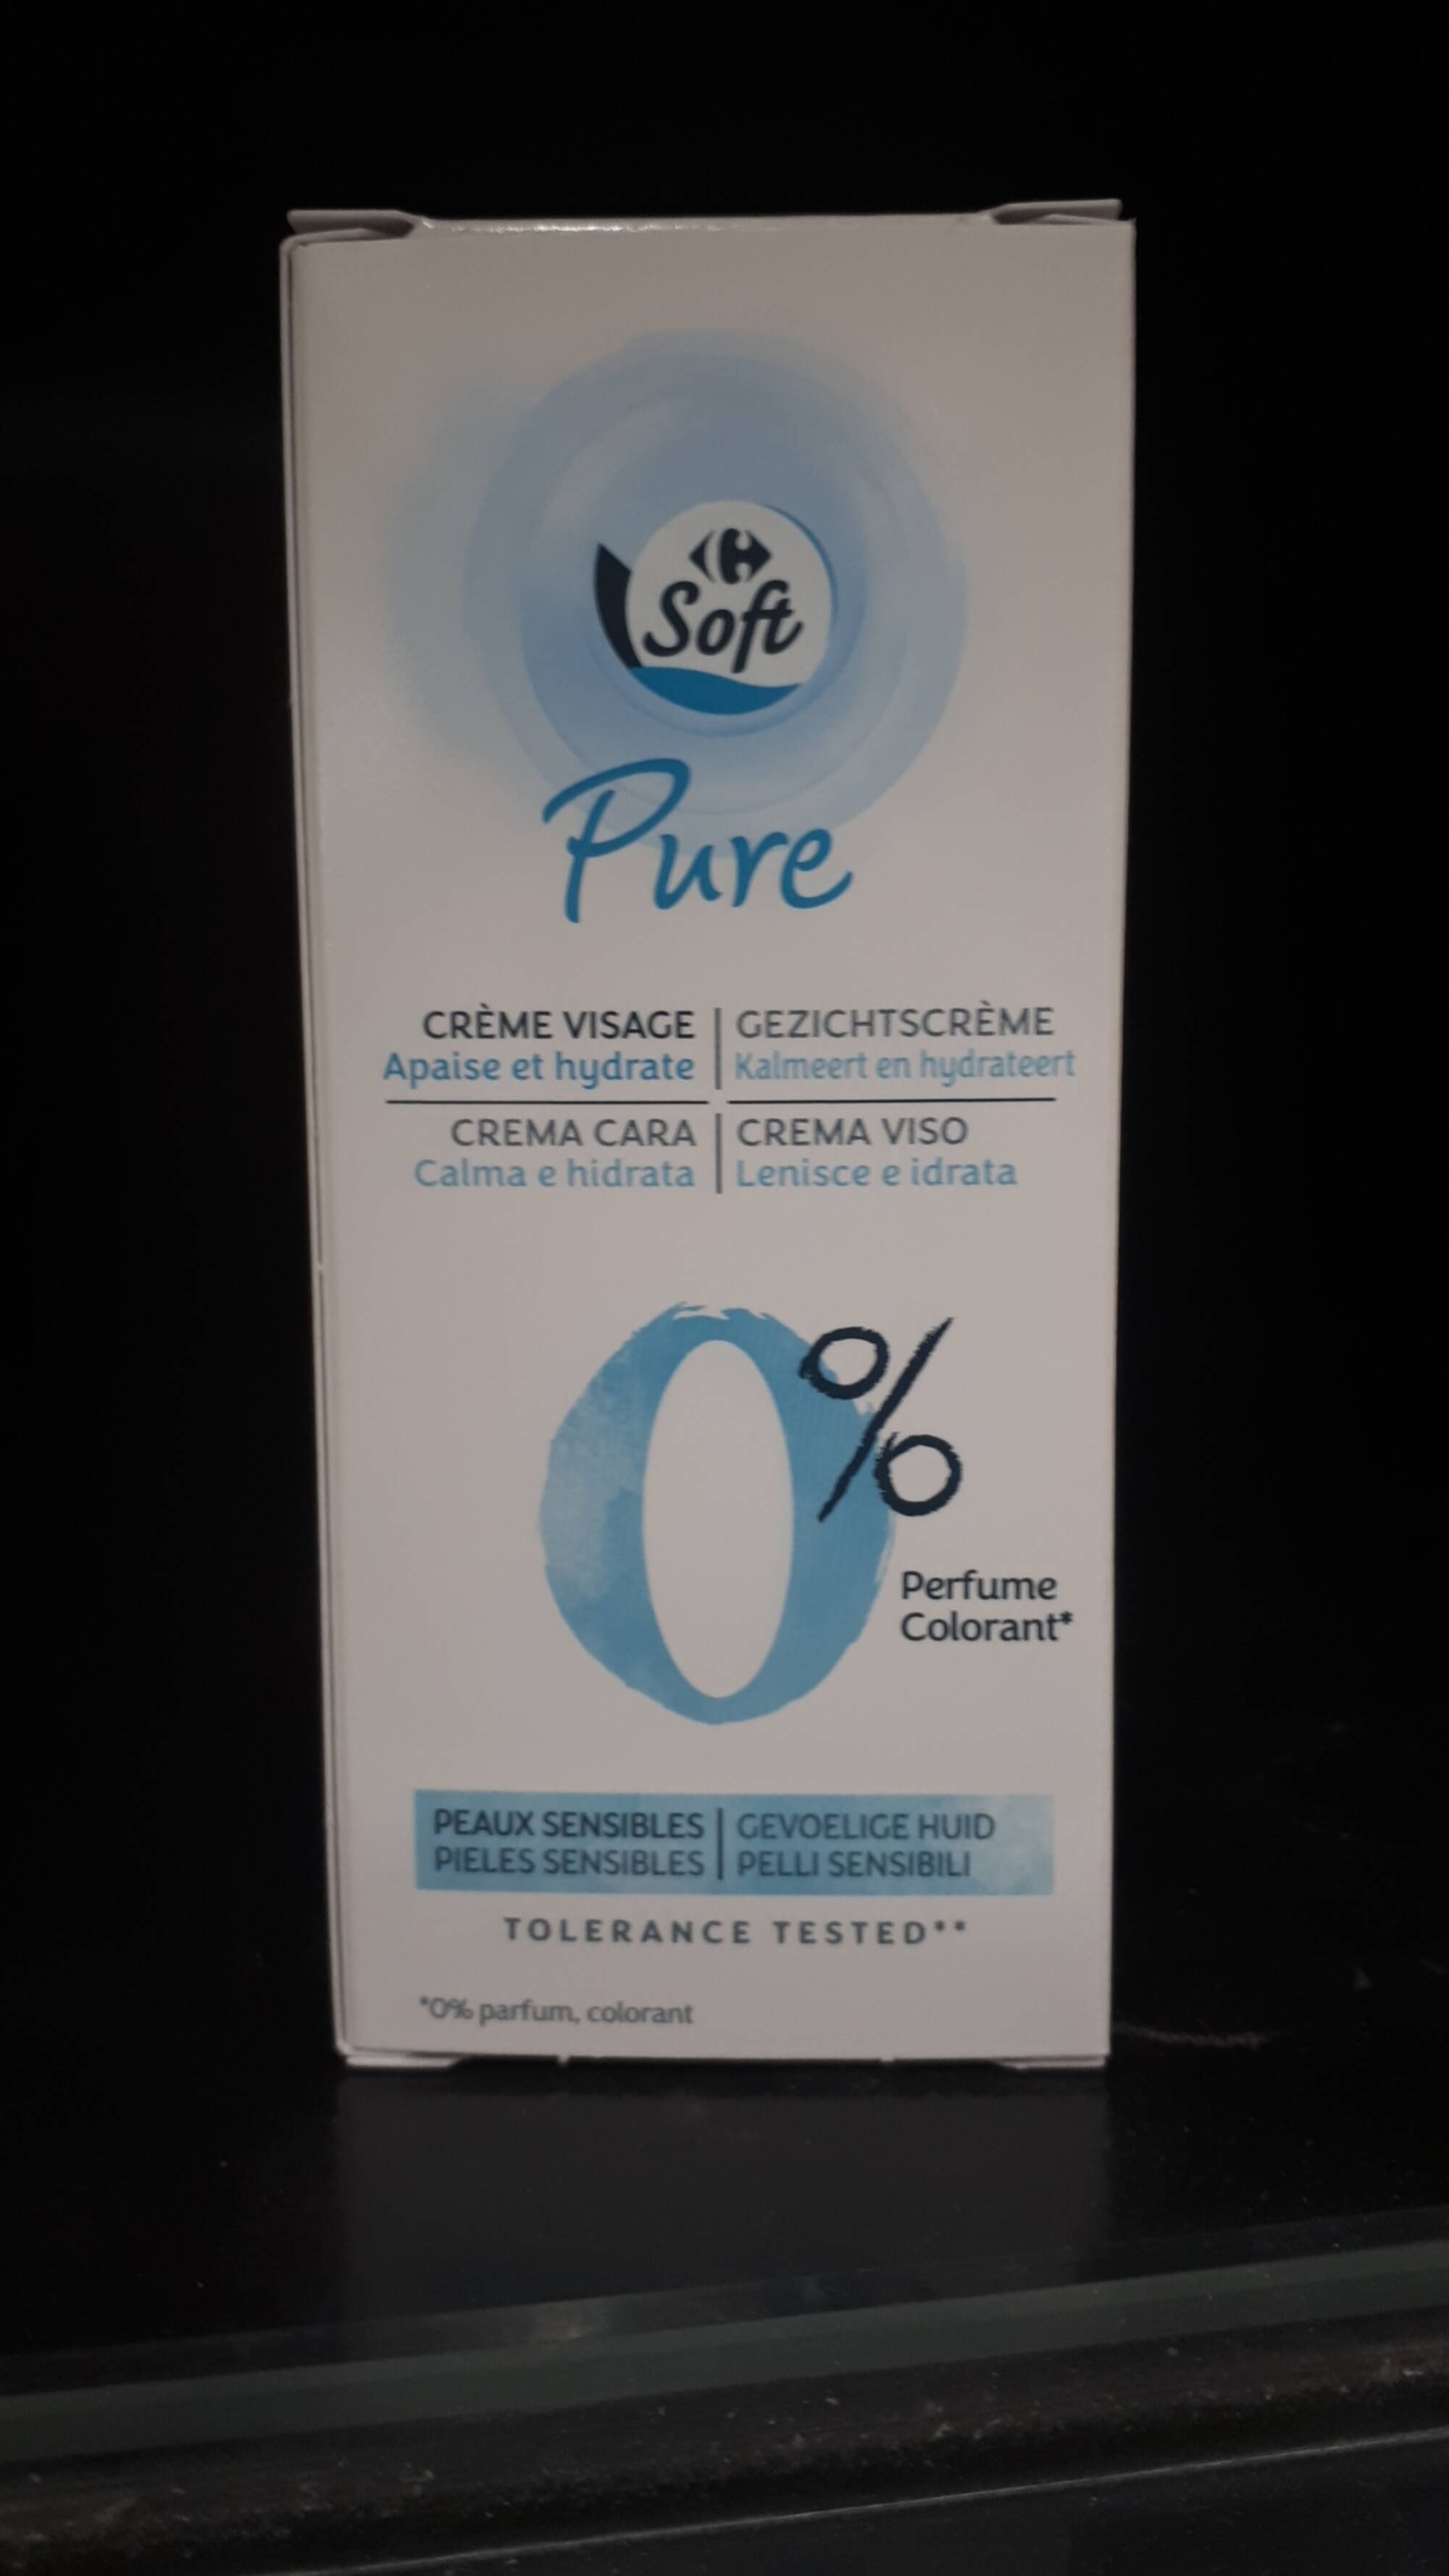 CARREFOUR - Carrefour soft Pure - Crème visage